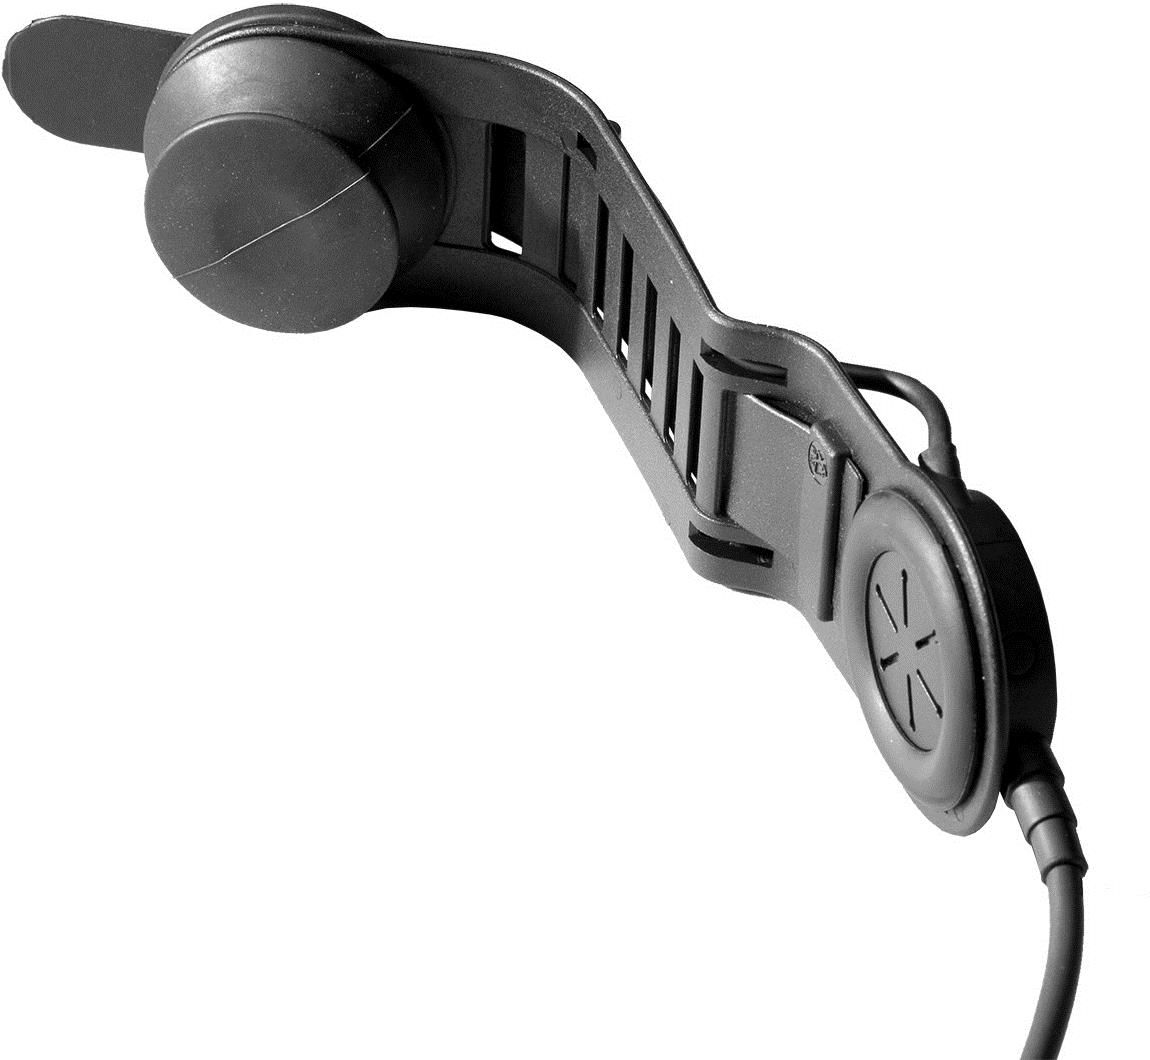 Savox HC-1 EX Helmgarnitur, Schädeldeckenmikro mit langem Bügel, IP56, Spiralkabel, Nexus 1 Hörer (verbessert), vibrationsempfindliches Knochenschall-mikrofon, mit Nexus Schnelltrennstecker zum Anschlusseiner PTT-Einheit mit Funkgerätestecker (bitte